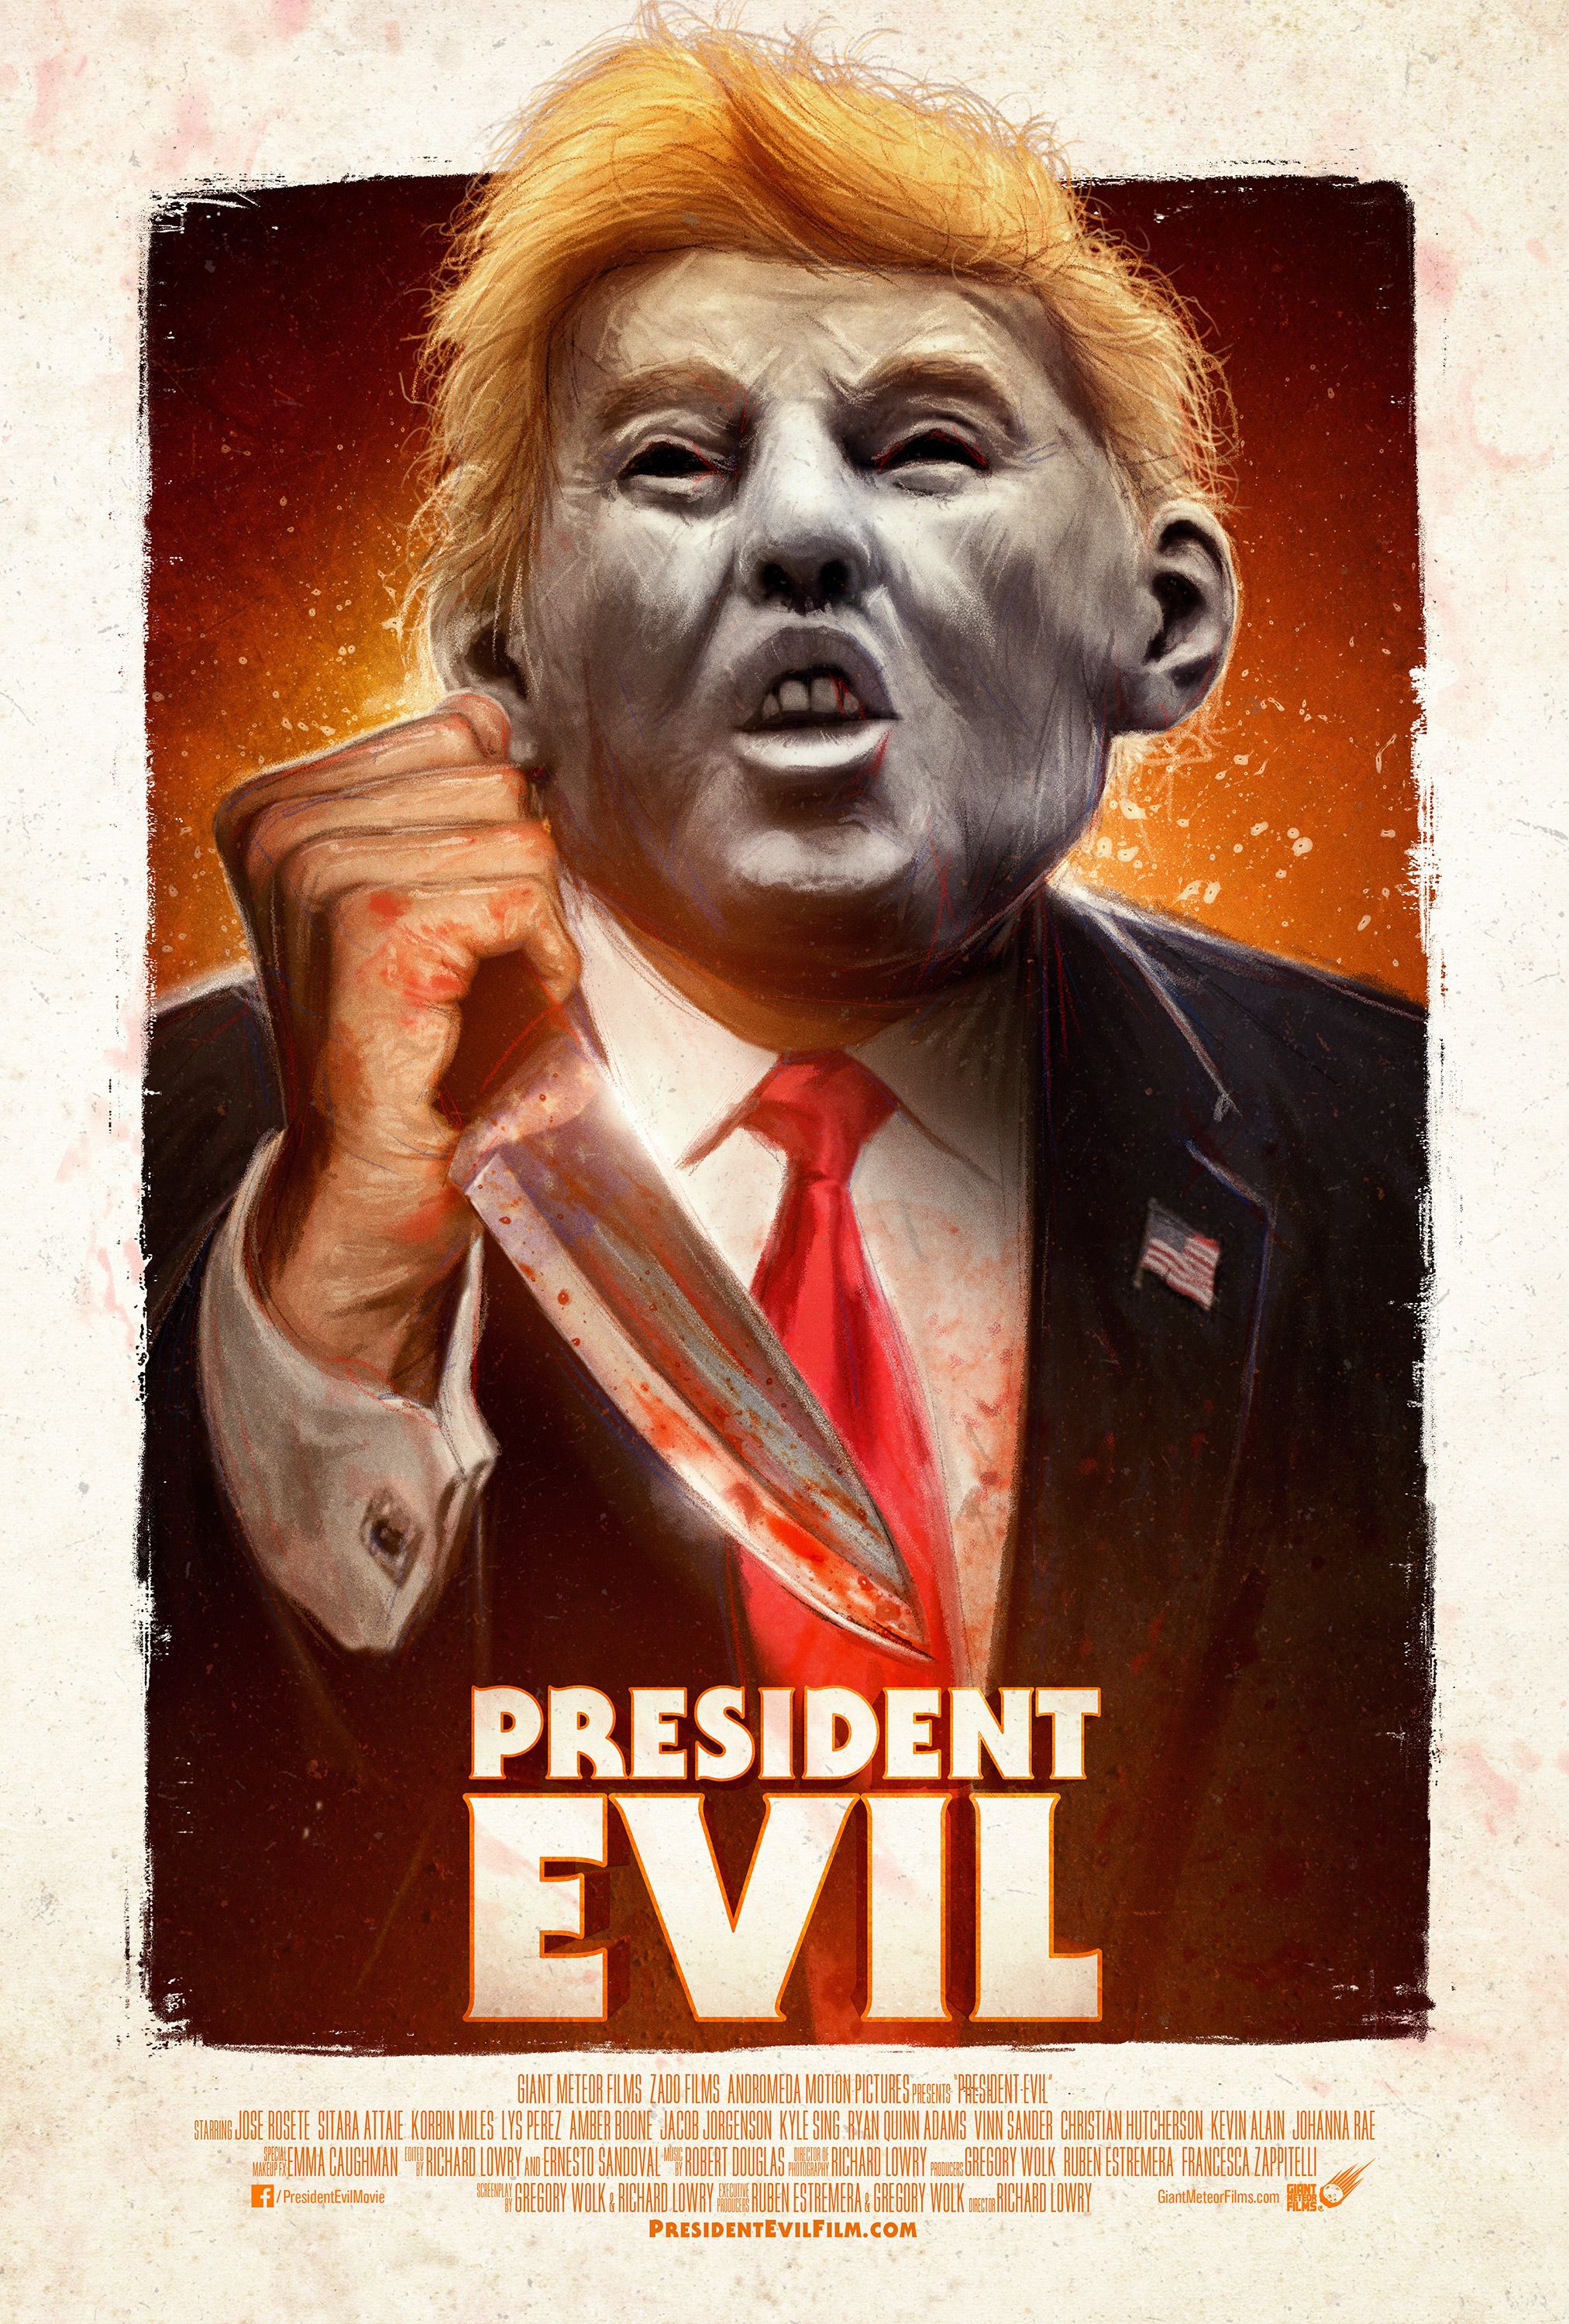 President Evil trailer